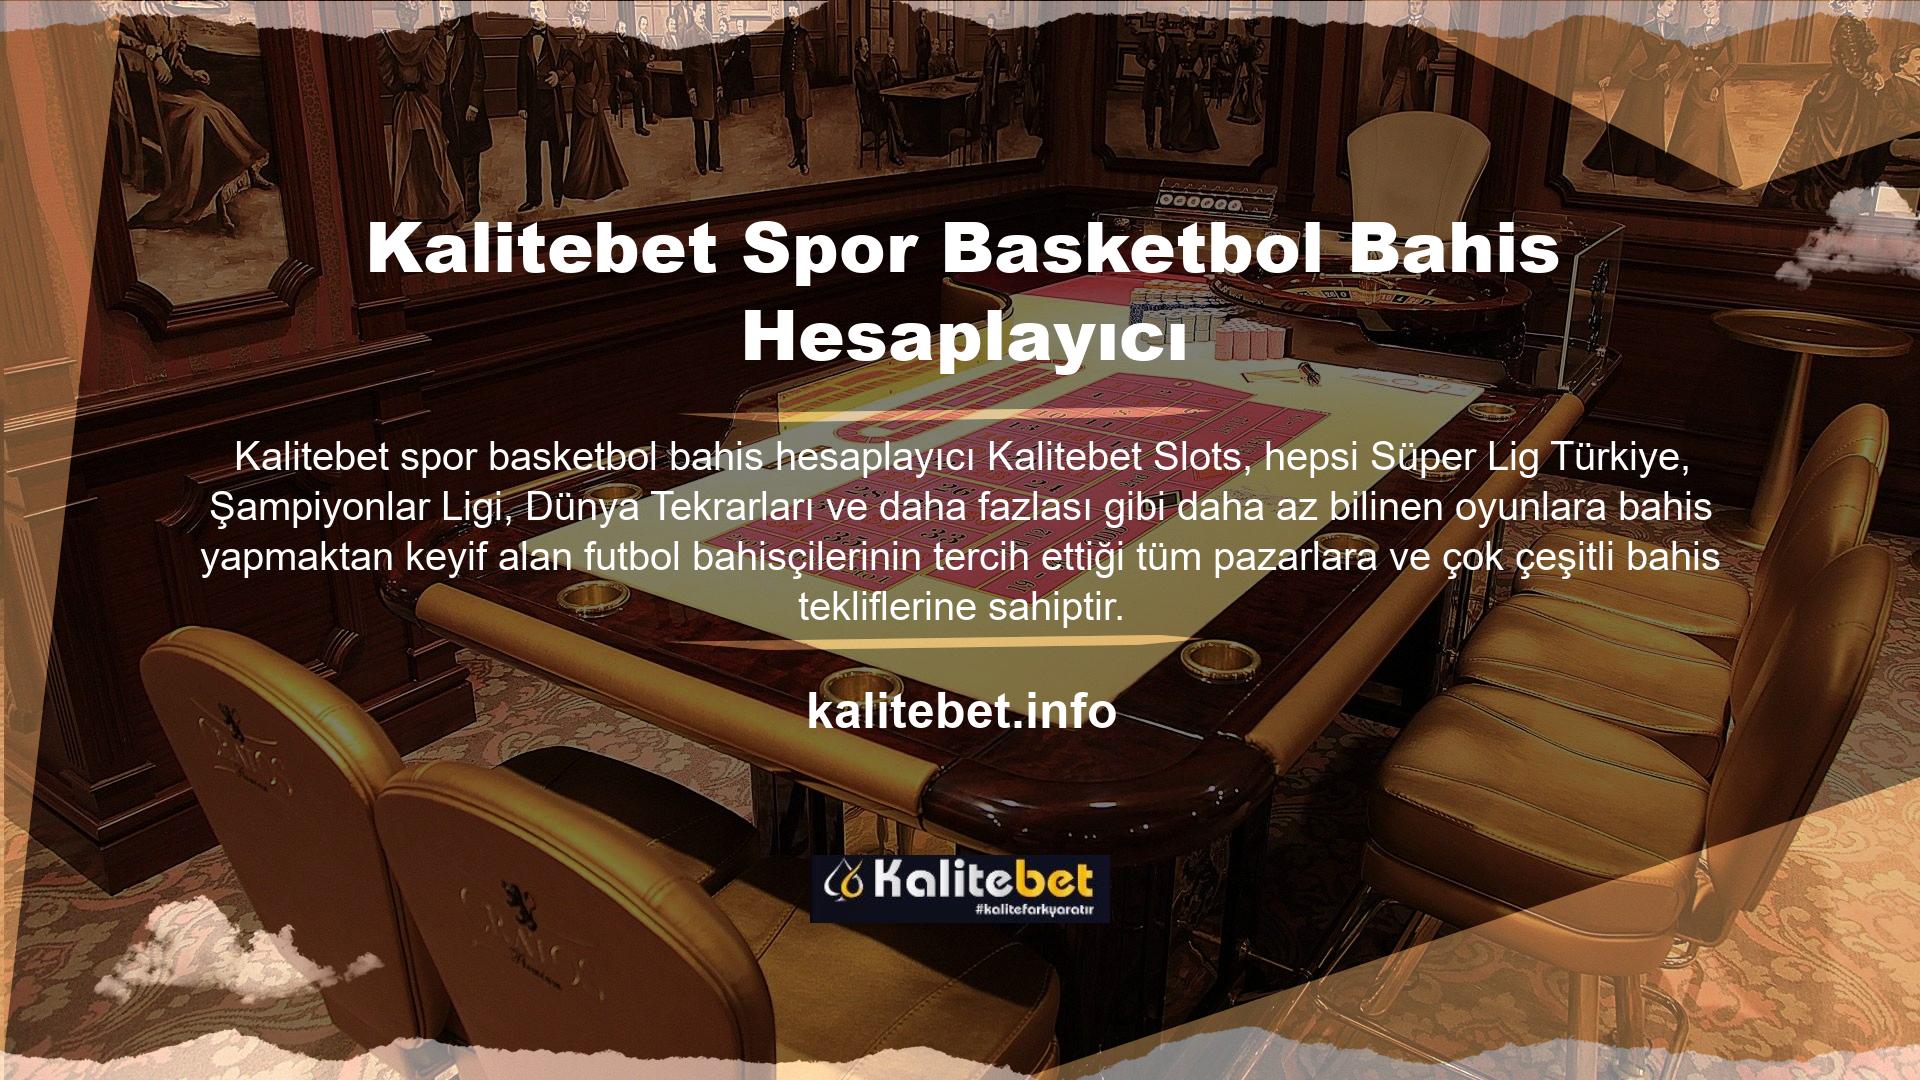 Teklif, "İstilacılar" tarafından bir bahis ihlali durumunda Kalitebet Basketbol bahis kuralları iadelerini ve ücretsiz tahminleri içerir